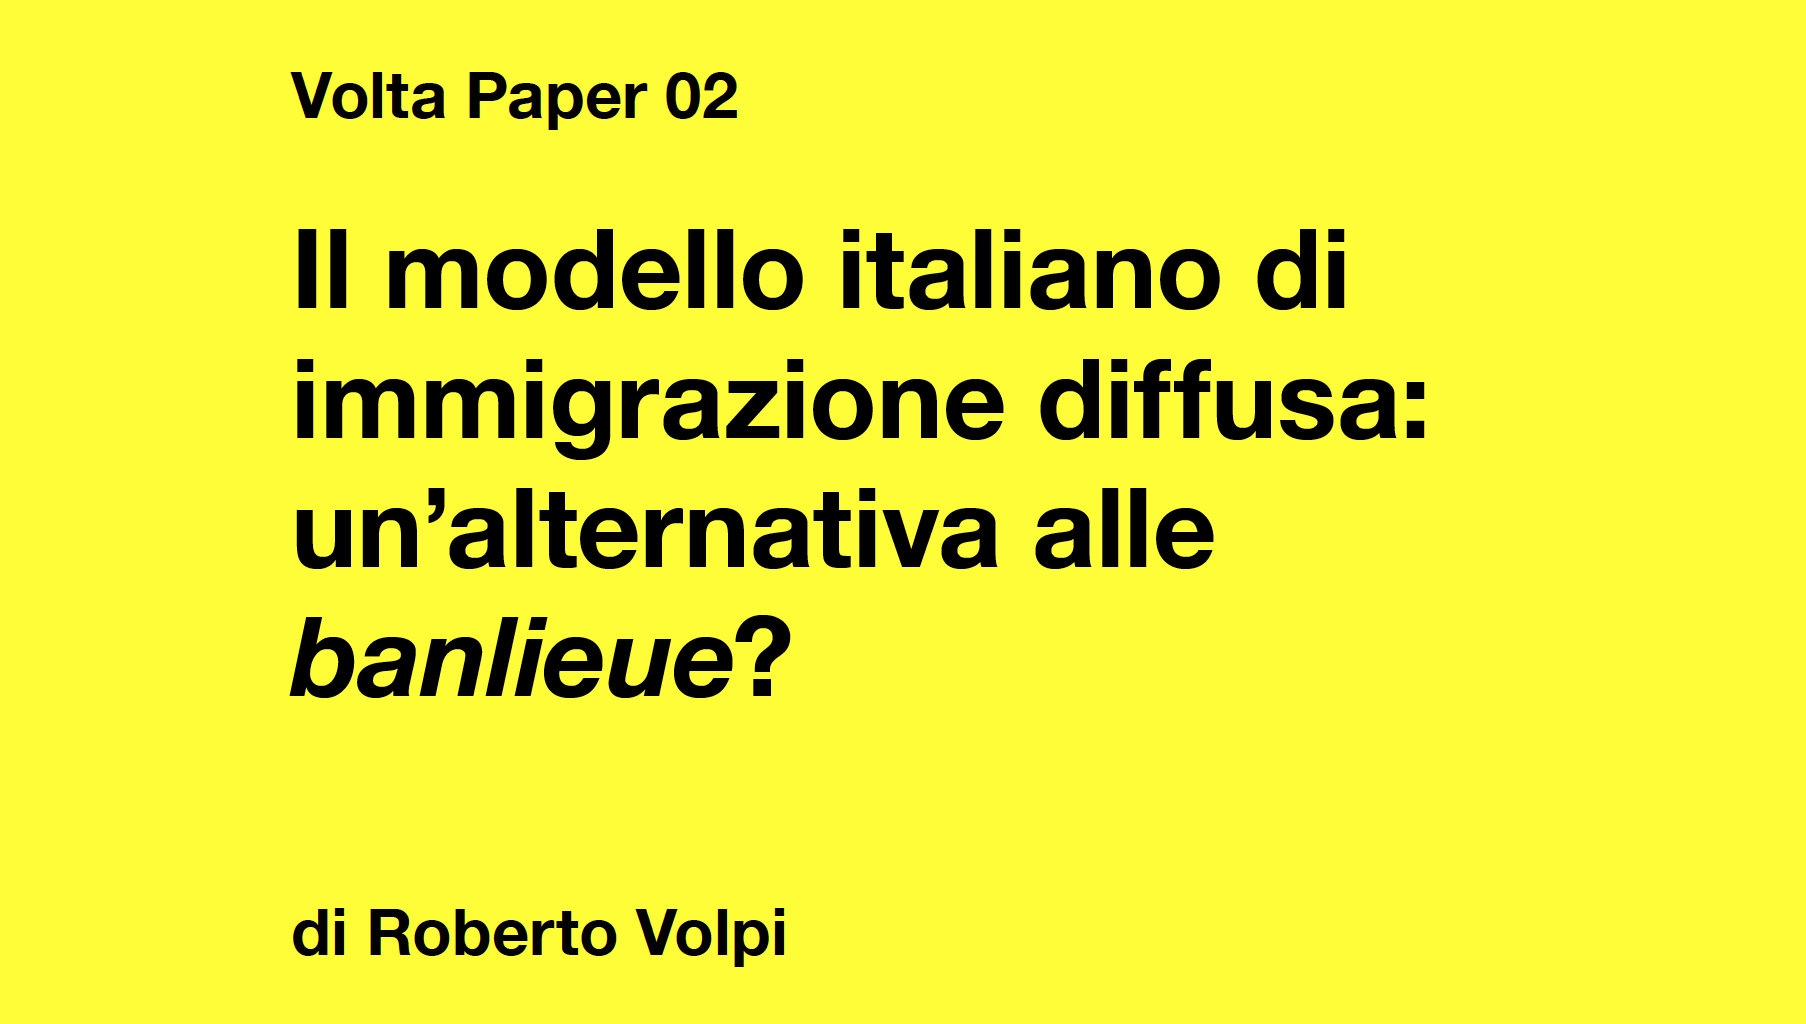 Il modello italiano di immigrazione diffusa